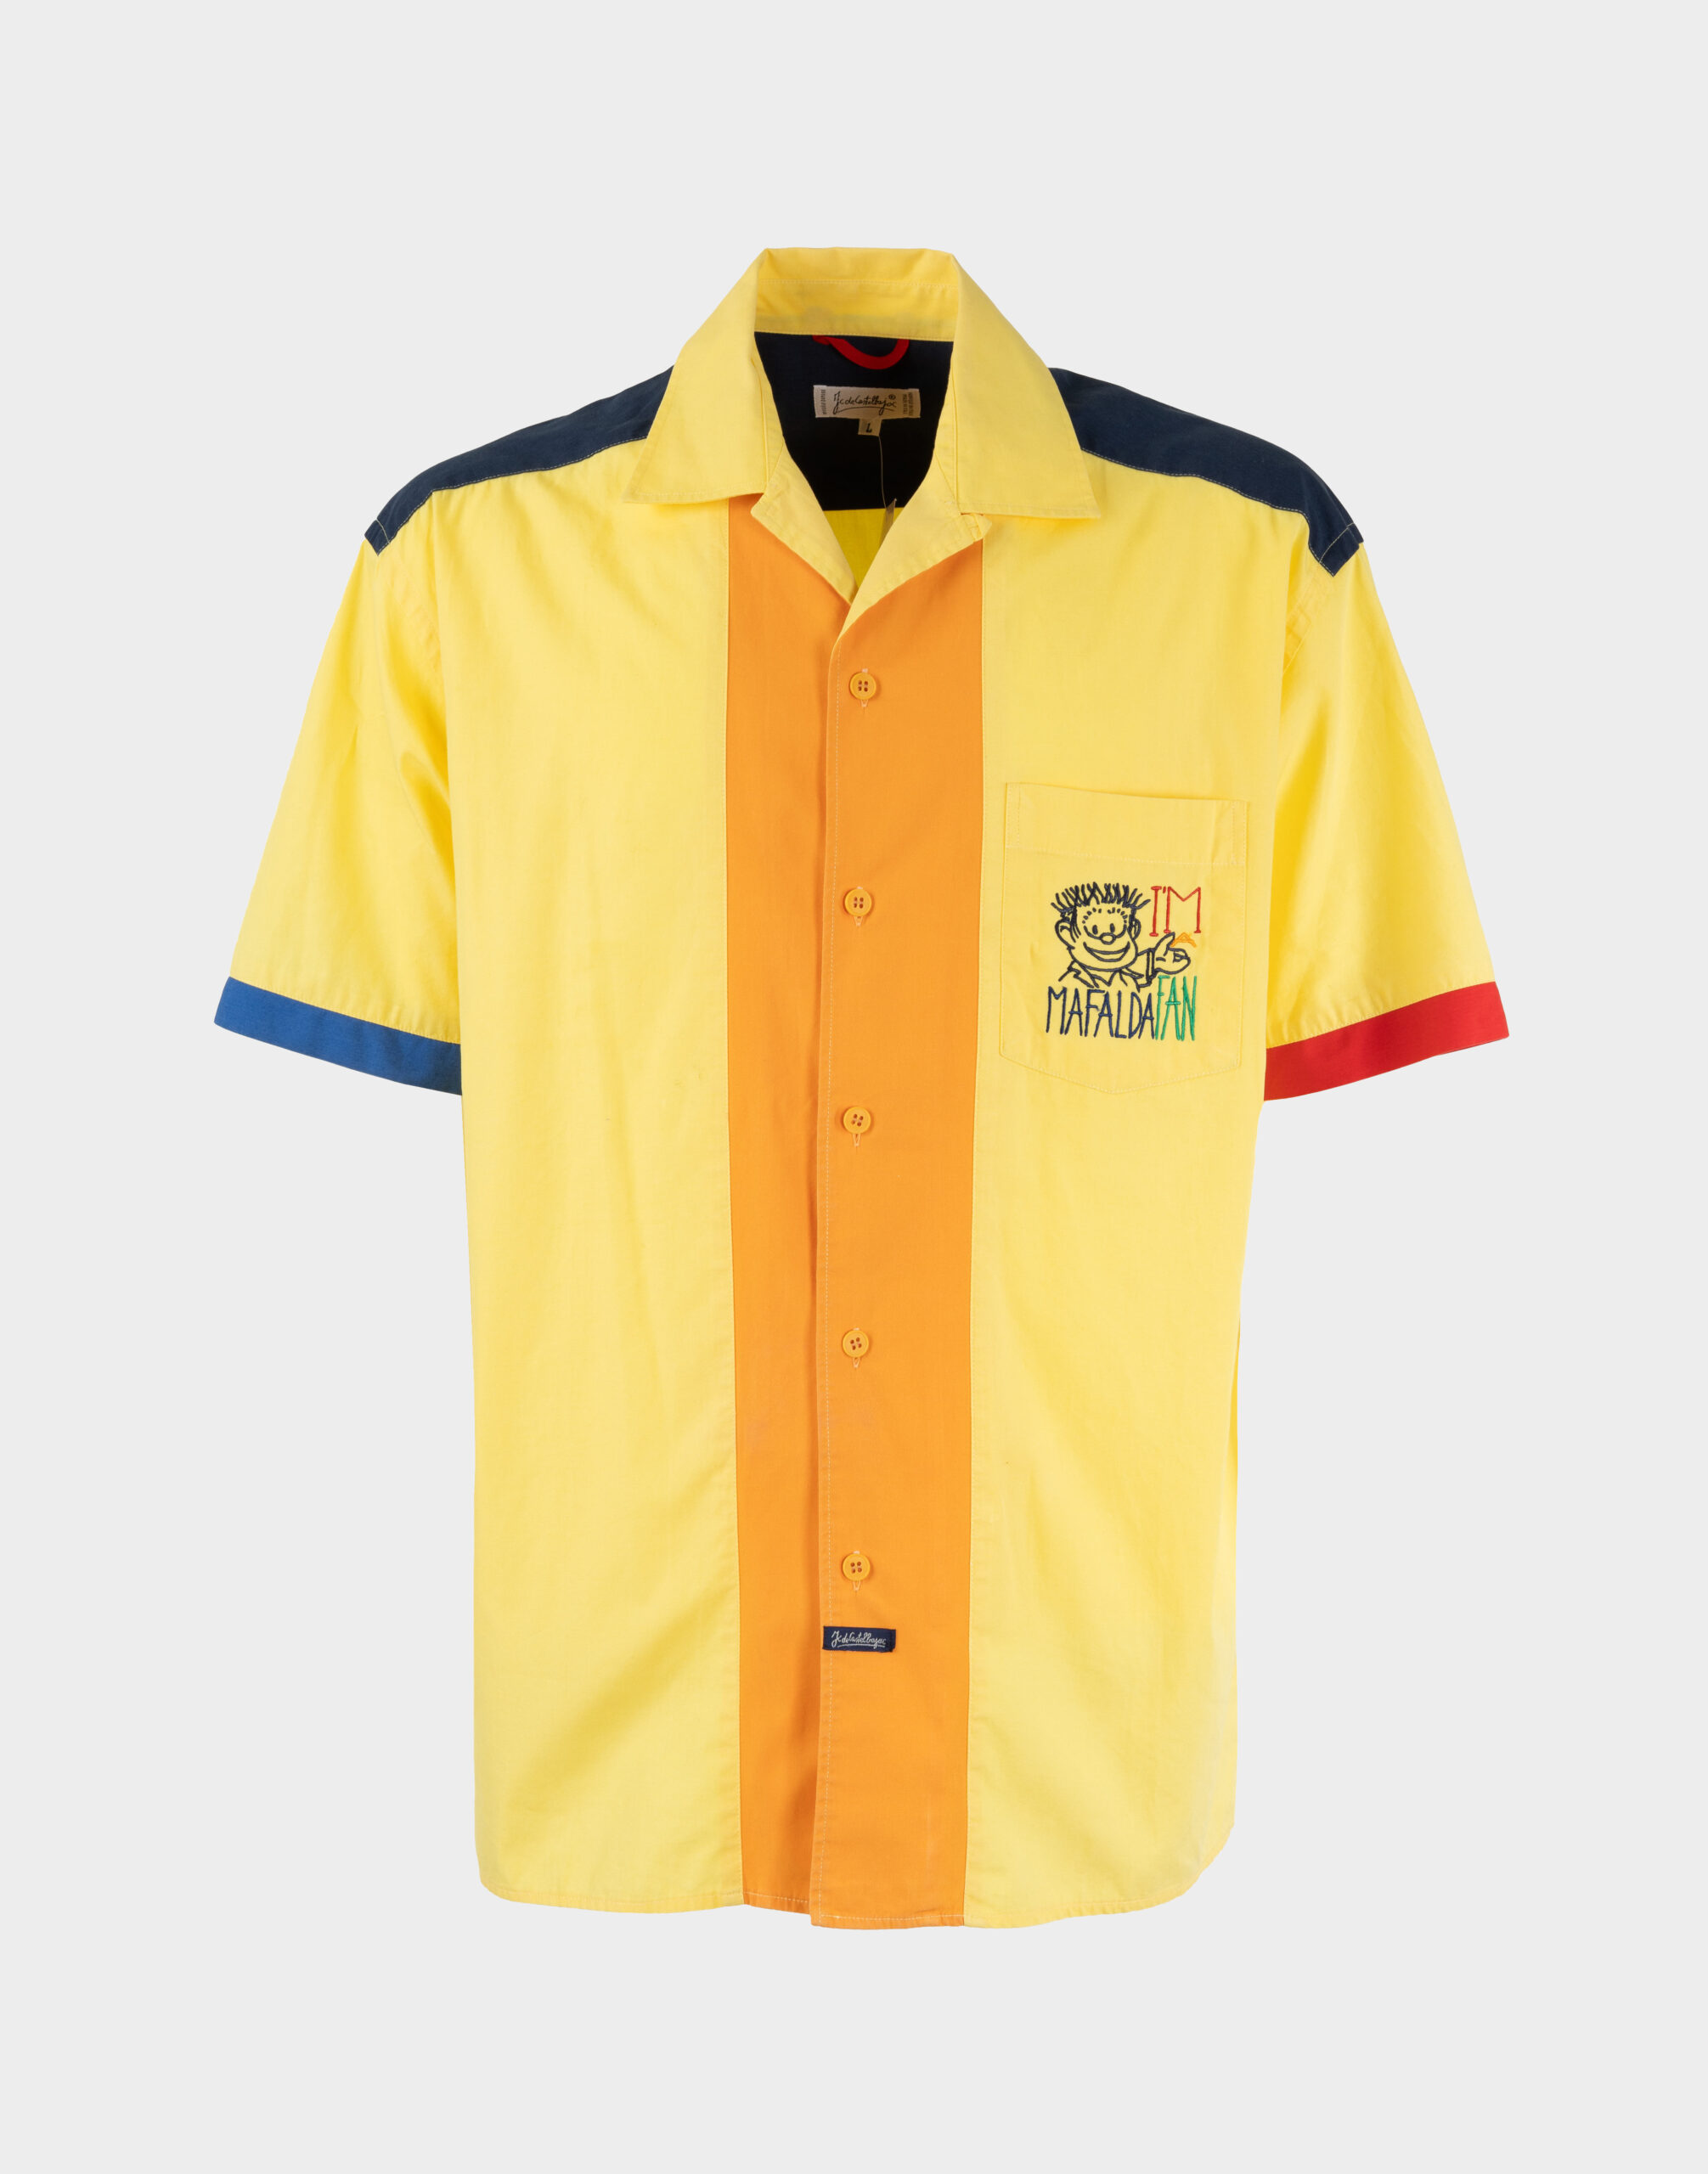 camicia da uomo a maniche corte gialla con dettagli blu e rossi, chiusura con bottoni e omino ricamato sul taschino